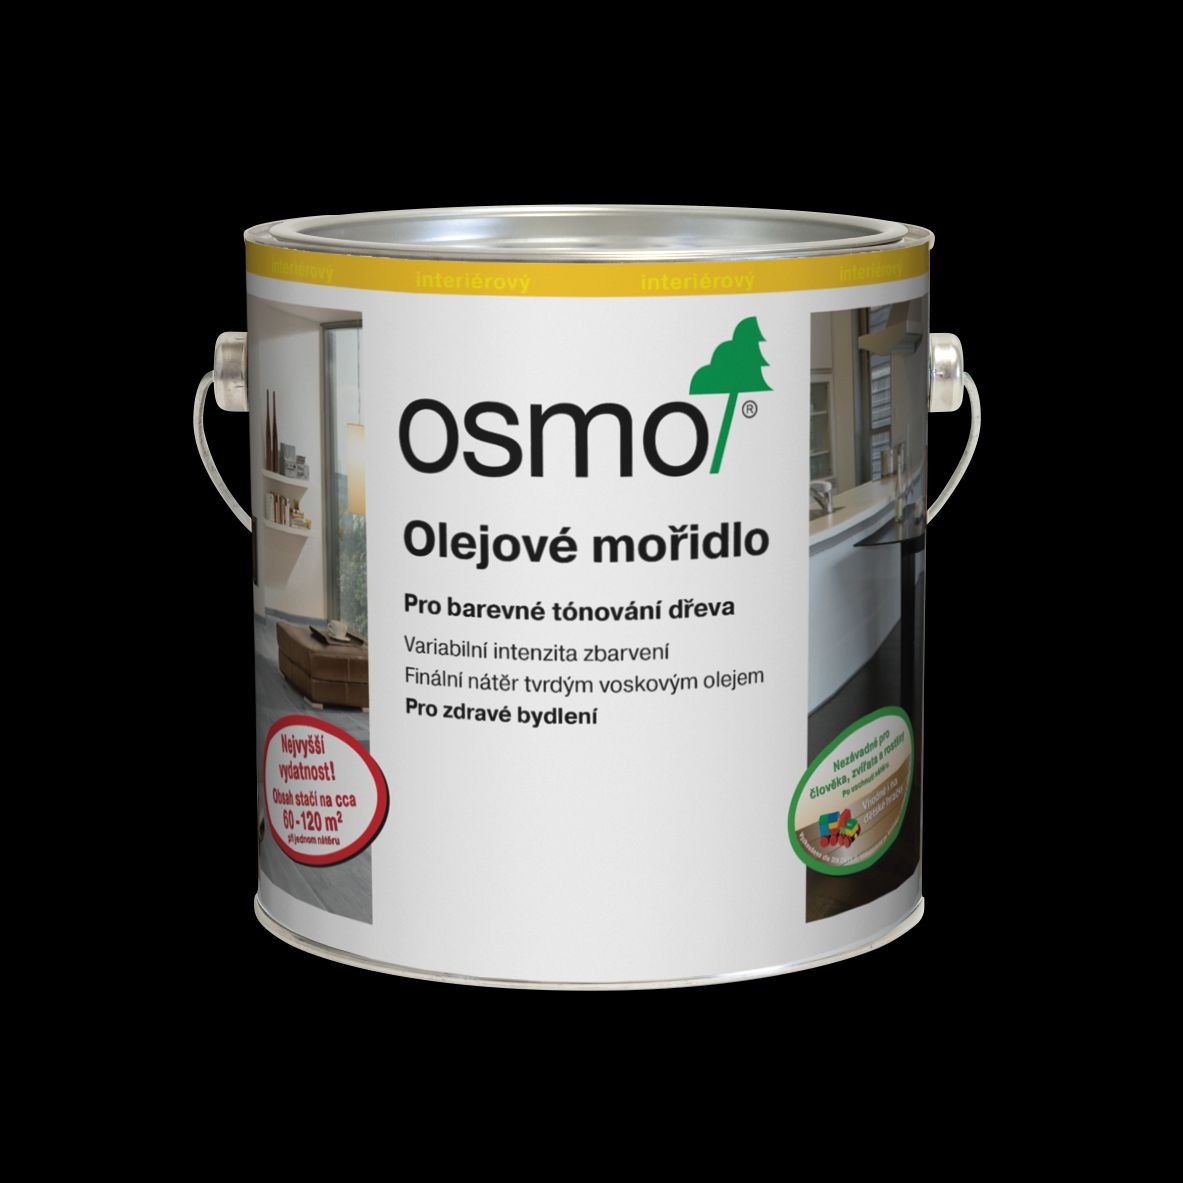 OSMO - Olejové moridlo 1 l